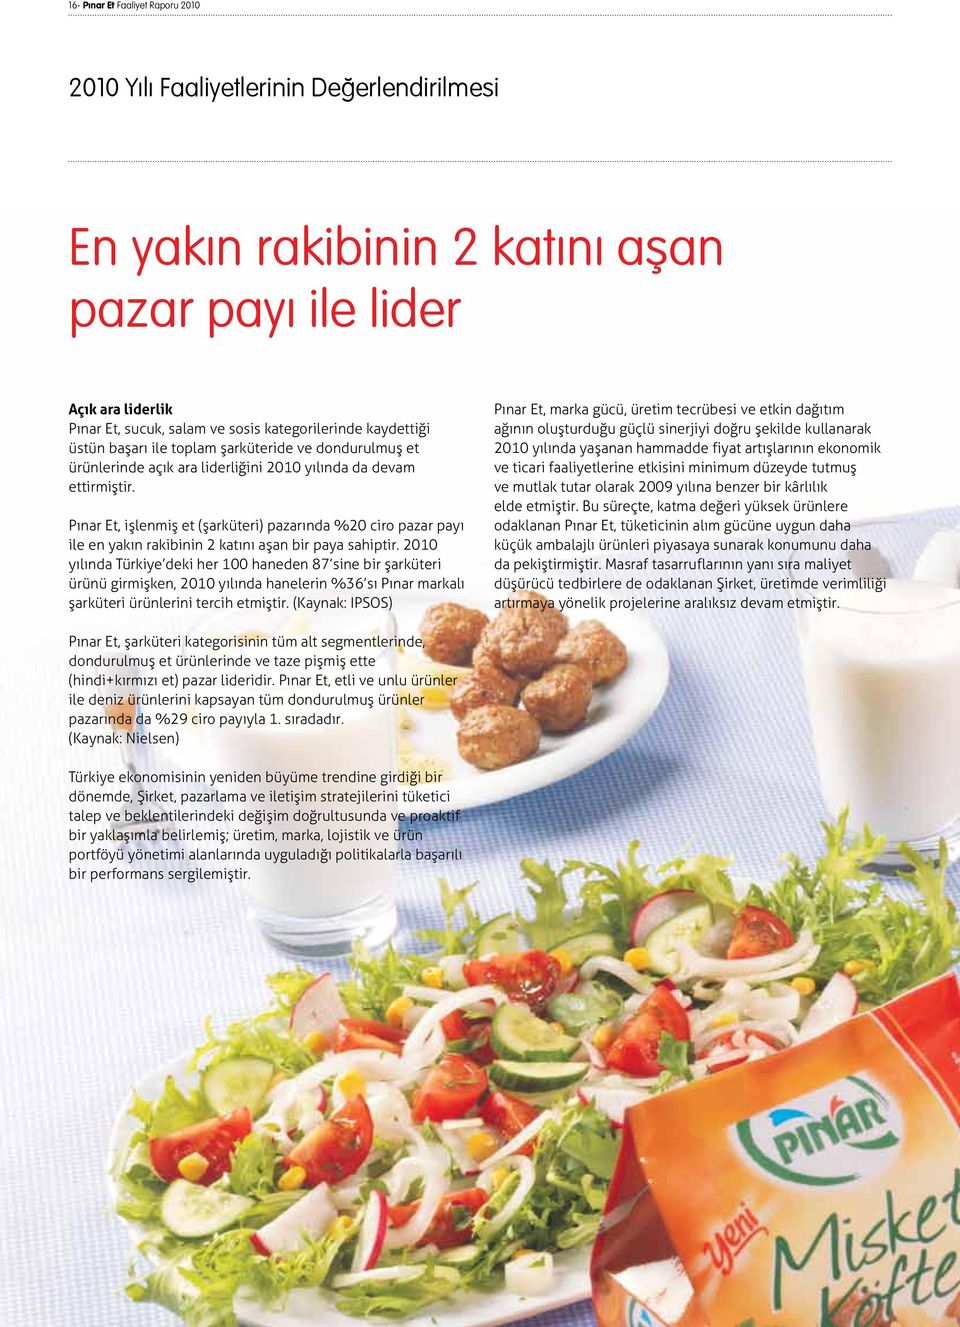 Pınar Et, işlenmiş et (şarküteri) pazarında %20 ciro pazar payı ile en yakın rakibinin 2 katını aşan bir paya sahiptir.